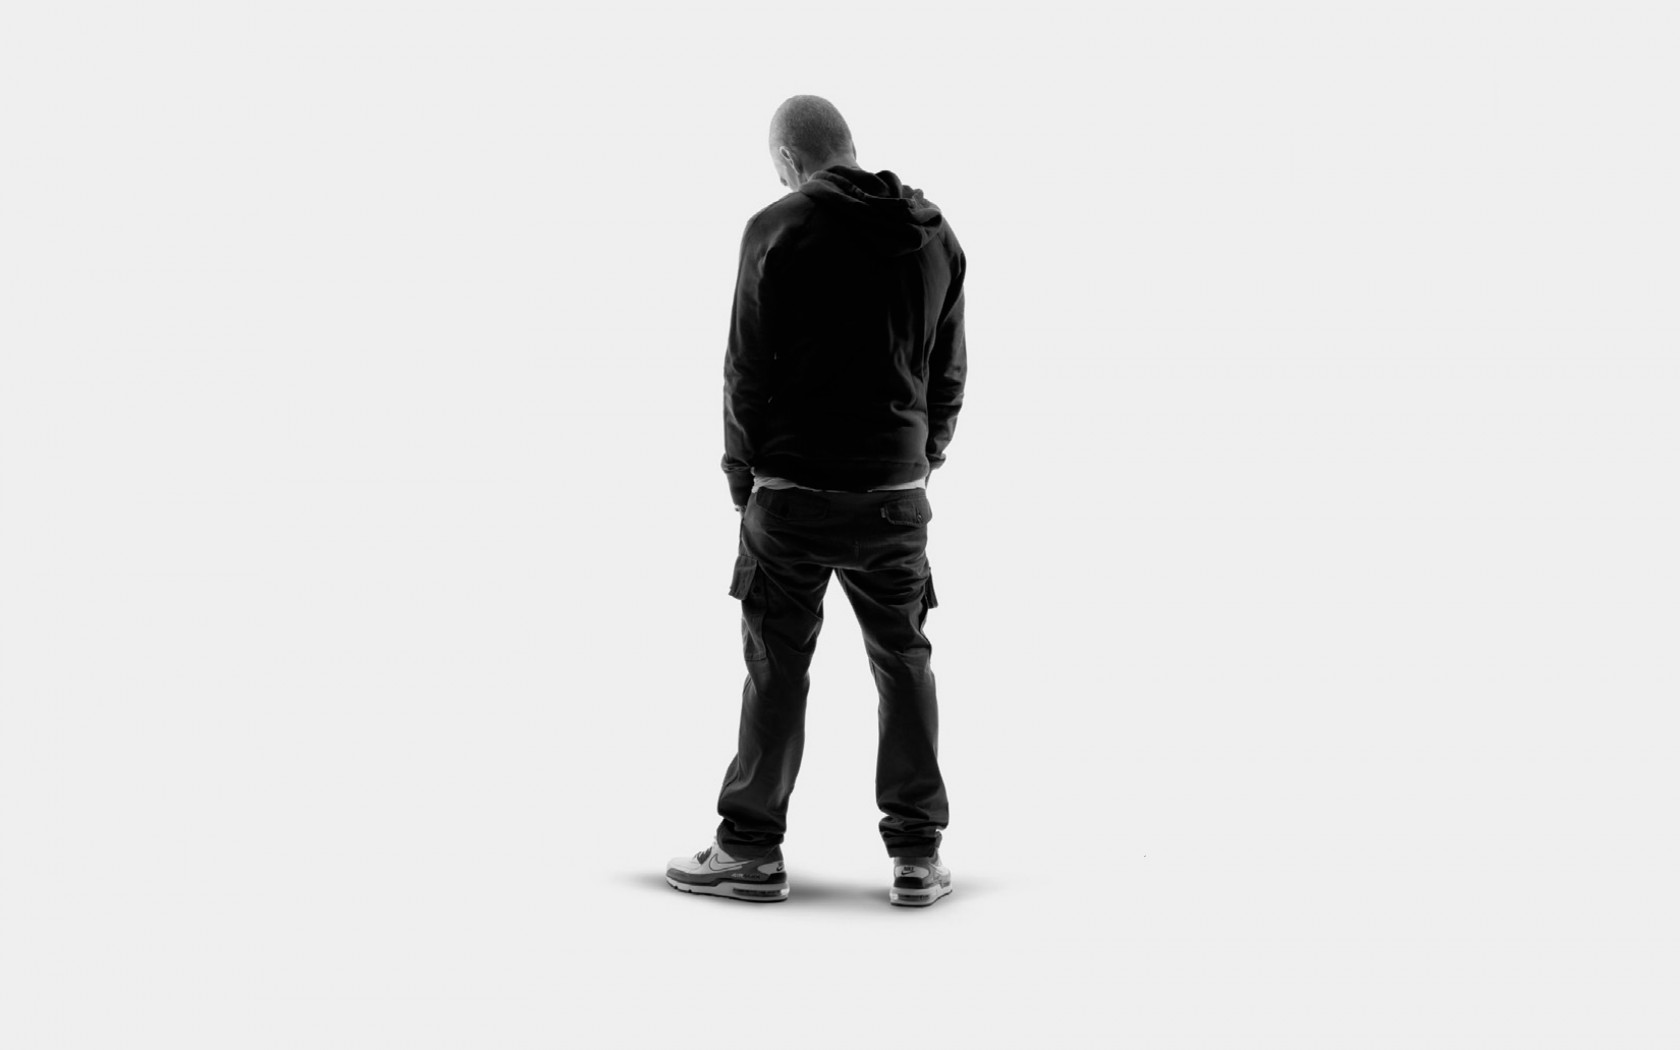 Eminem Rap God Wallpaper